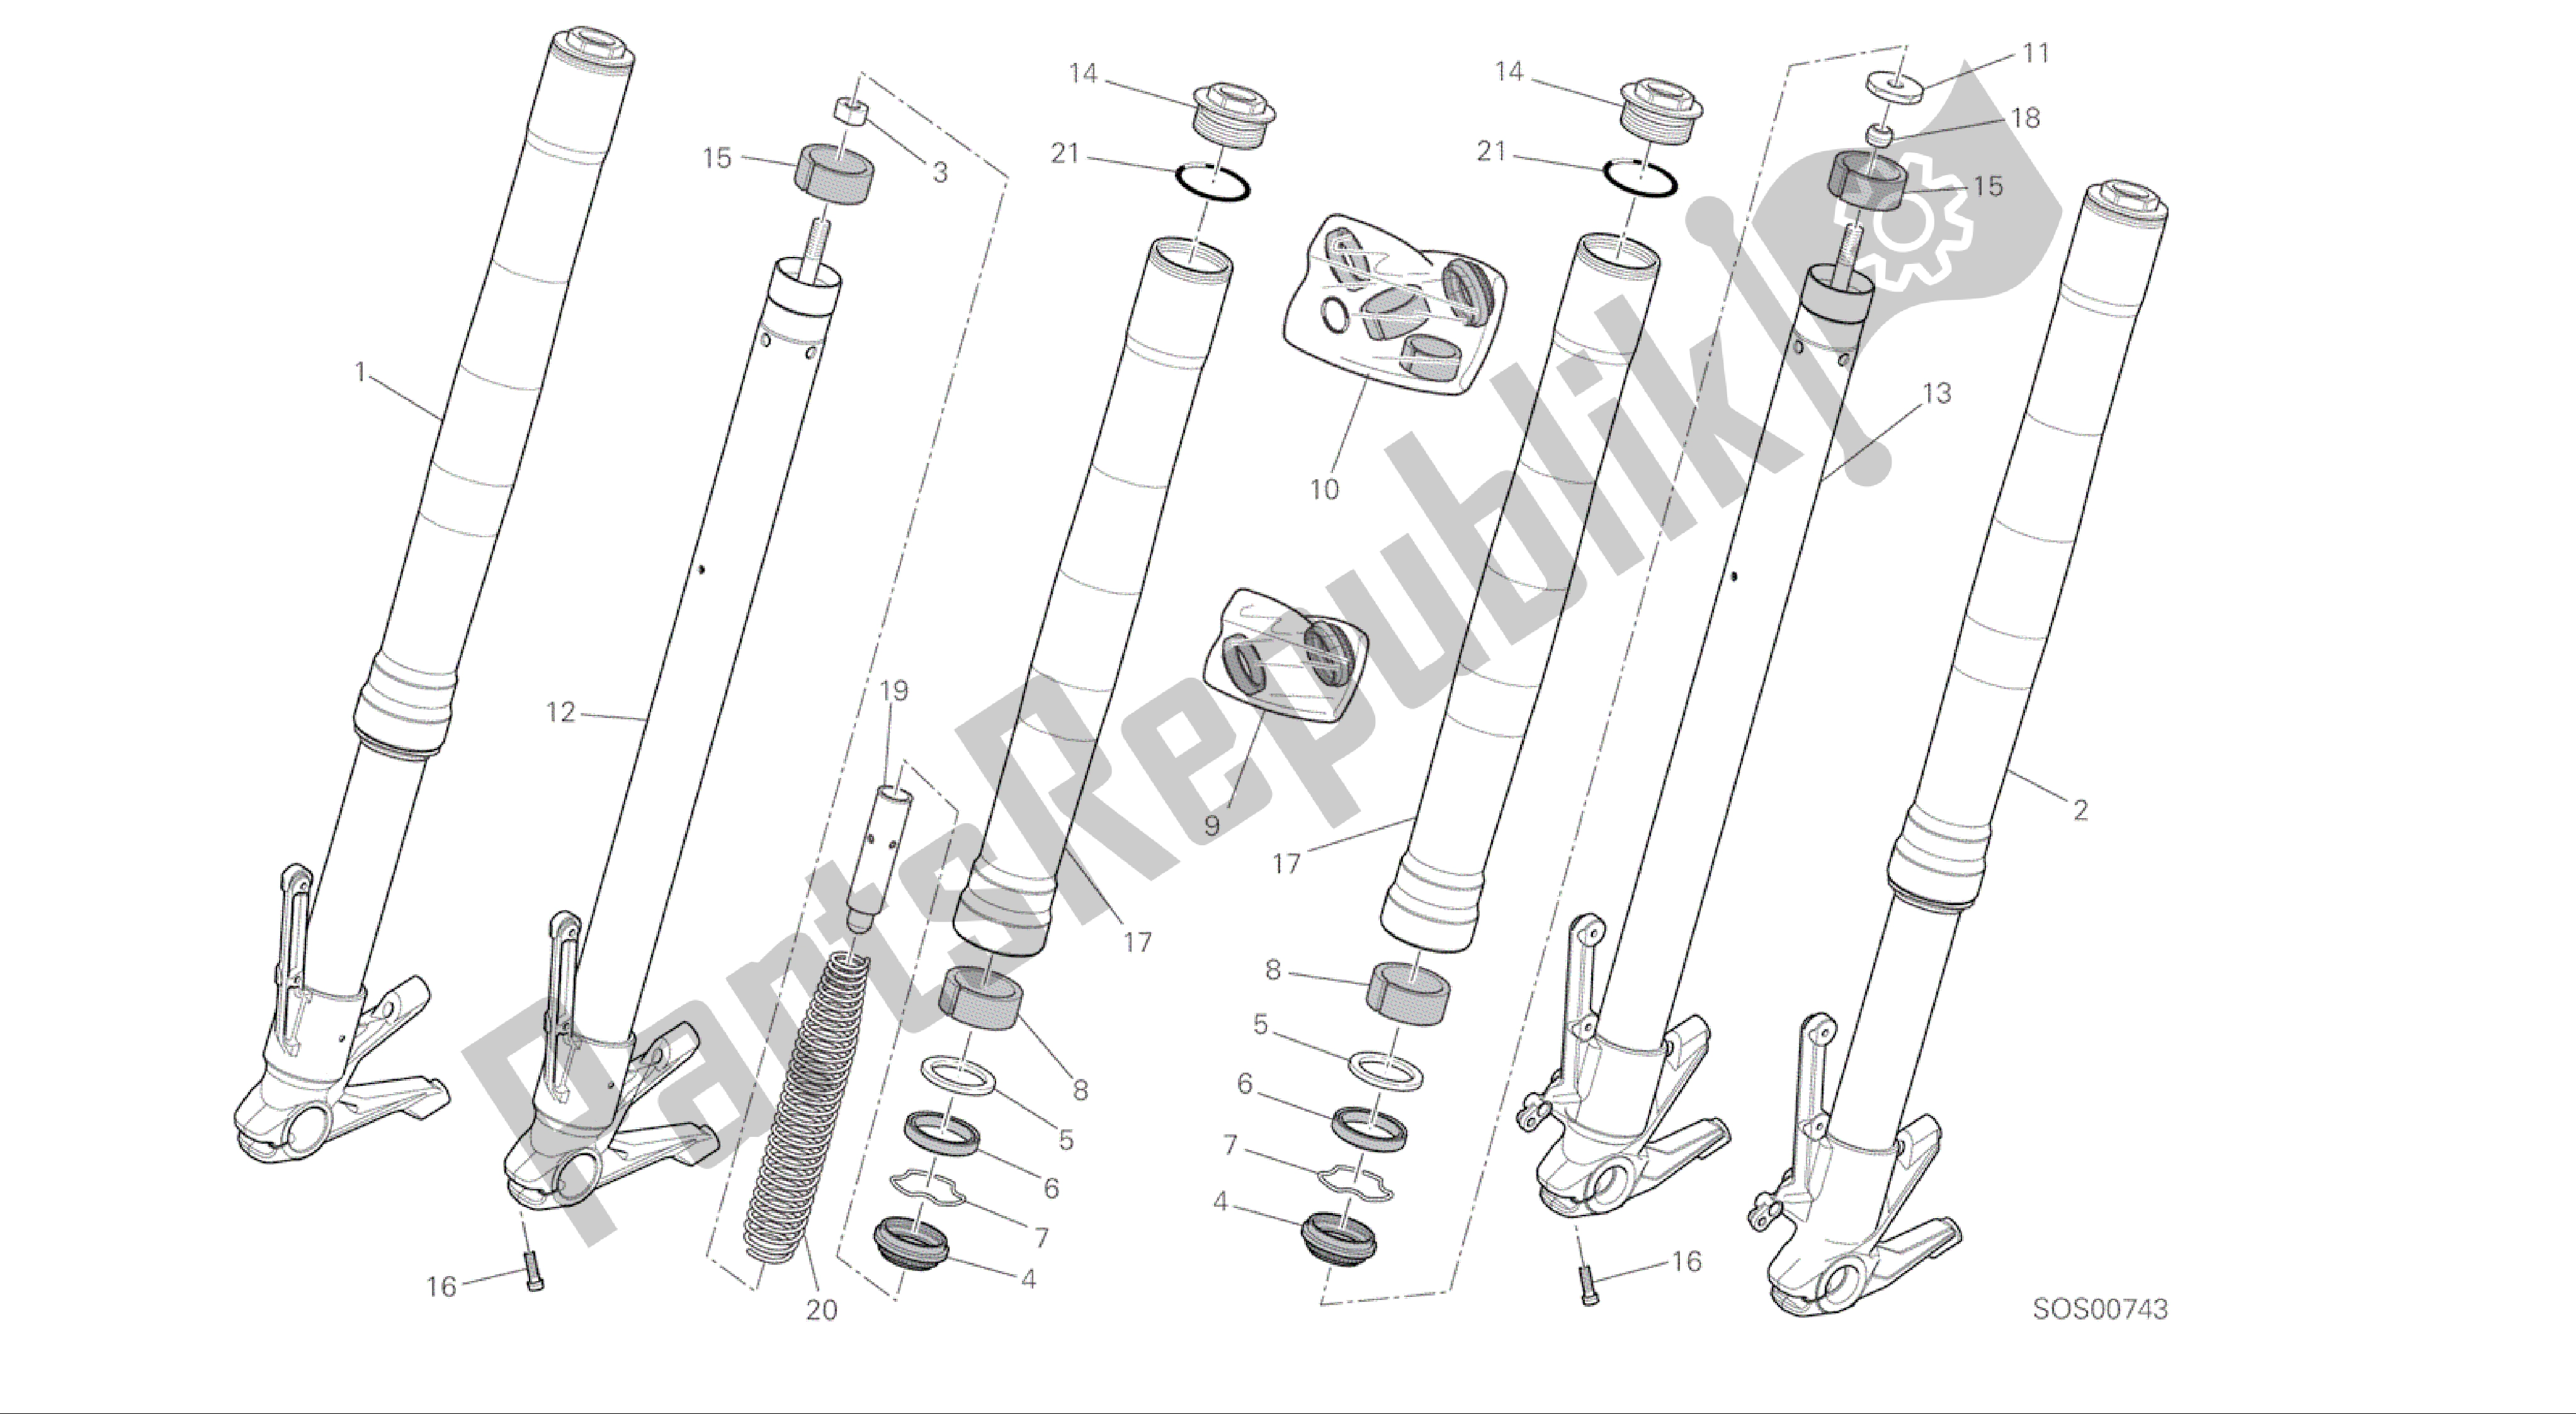 Todas las partes para Dibujo 21a - Horquilla Delantera [mod: M 821; Xst: Marco De Grupo Aus, Eur, Fra, Jap] de Ducati Monster 821 2016